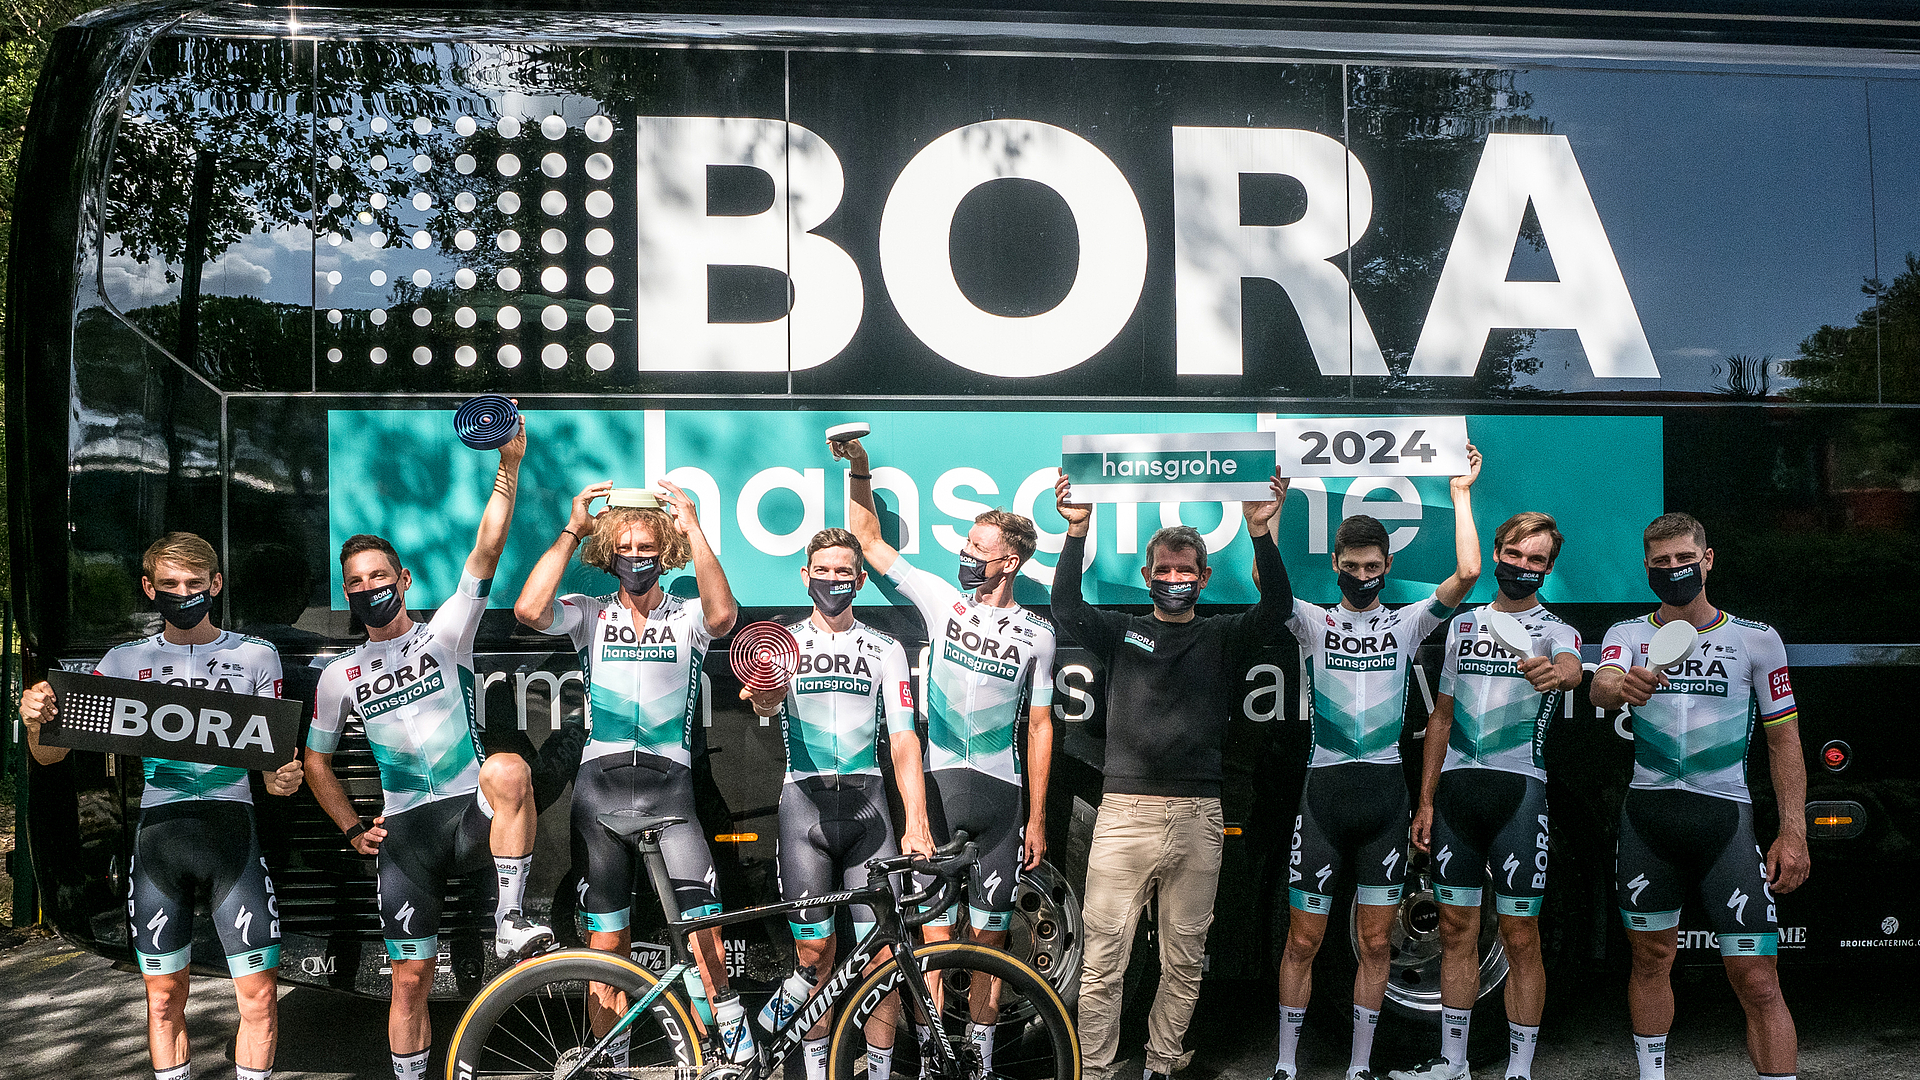 BORA continuerà ad essere lo sponsor principale della squadra di ciclismo BORA – hansgrohe fino al 2024